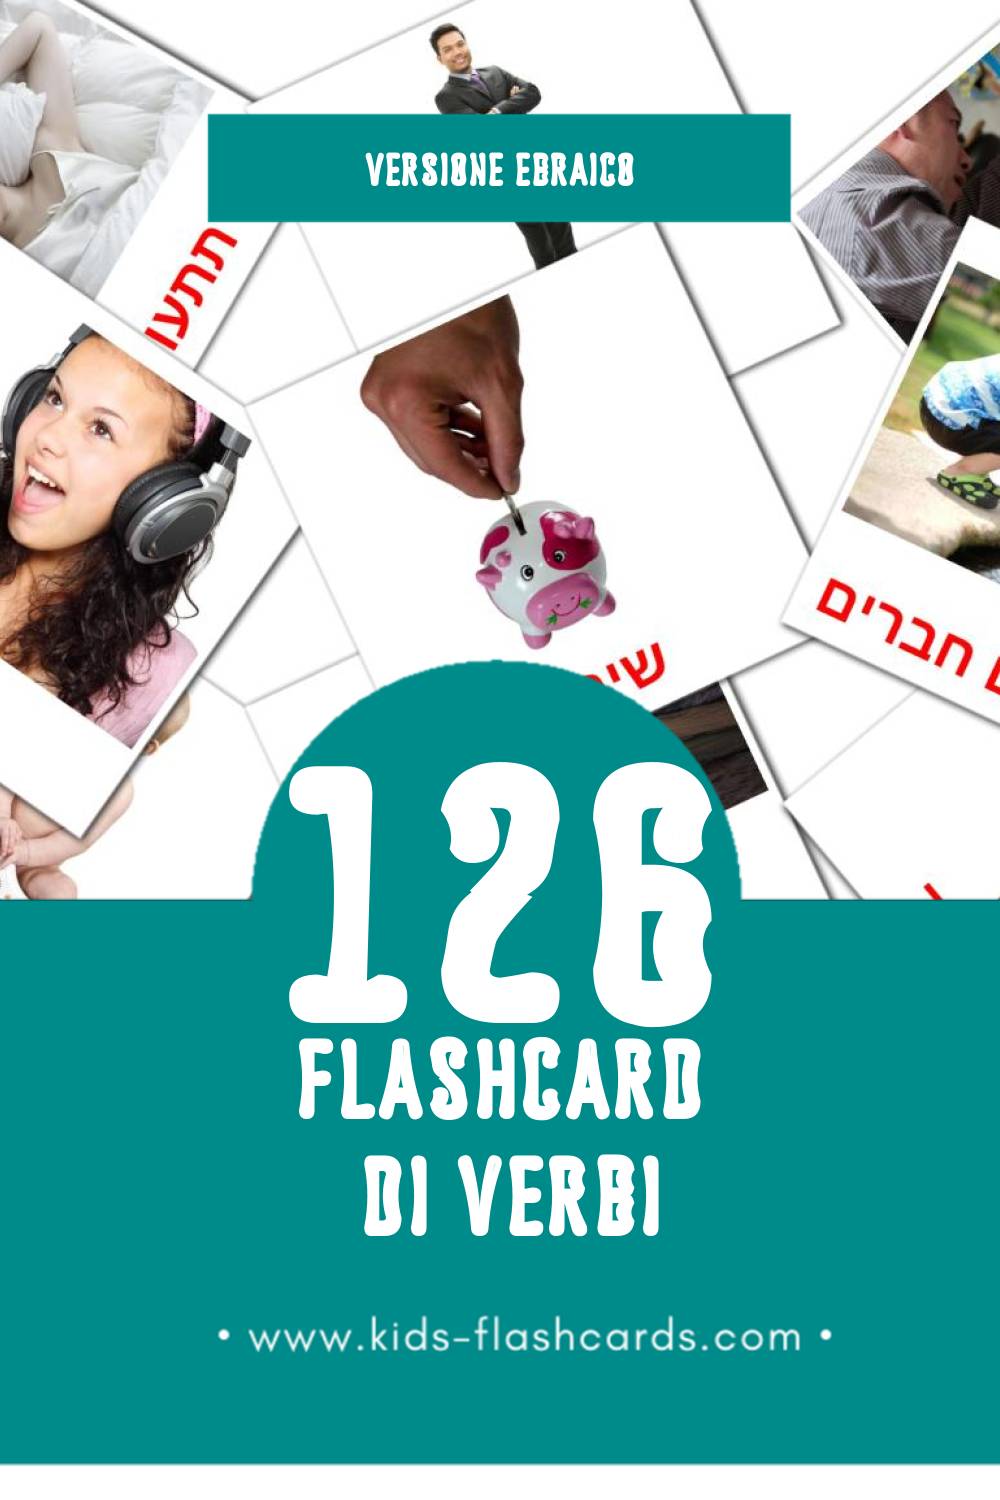 Schede visive sugli פעלים per bambini (126 schede in Ebraico)